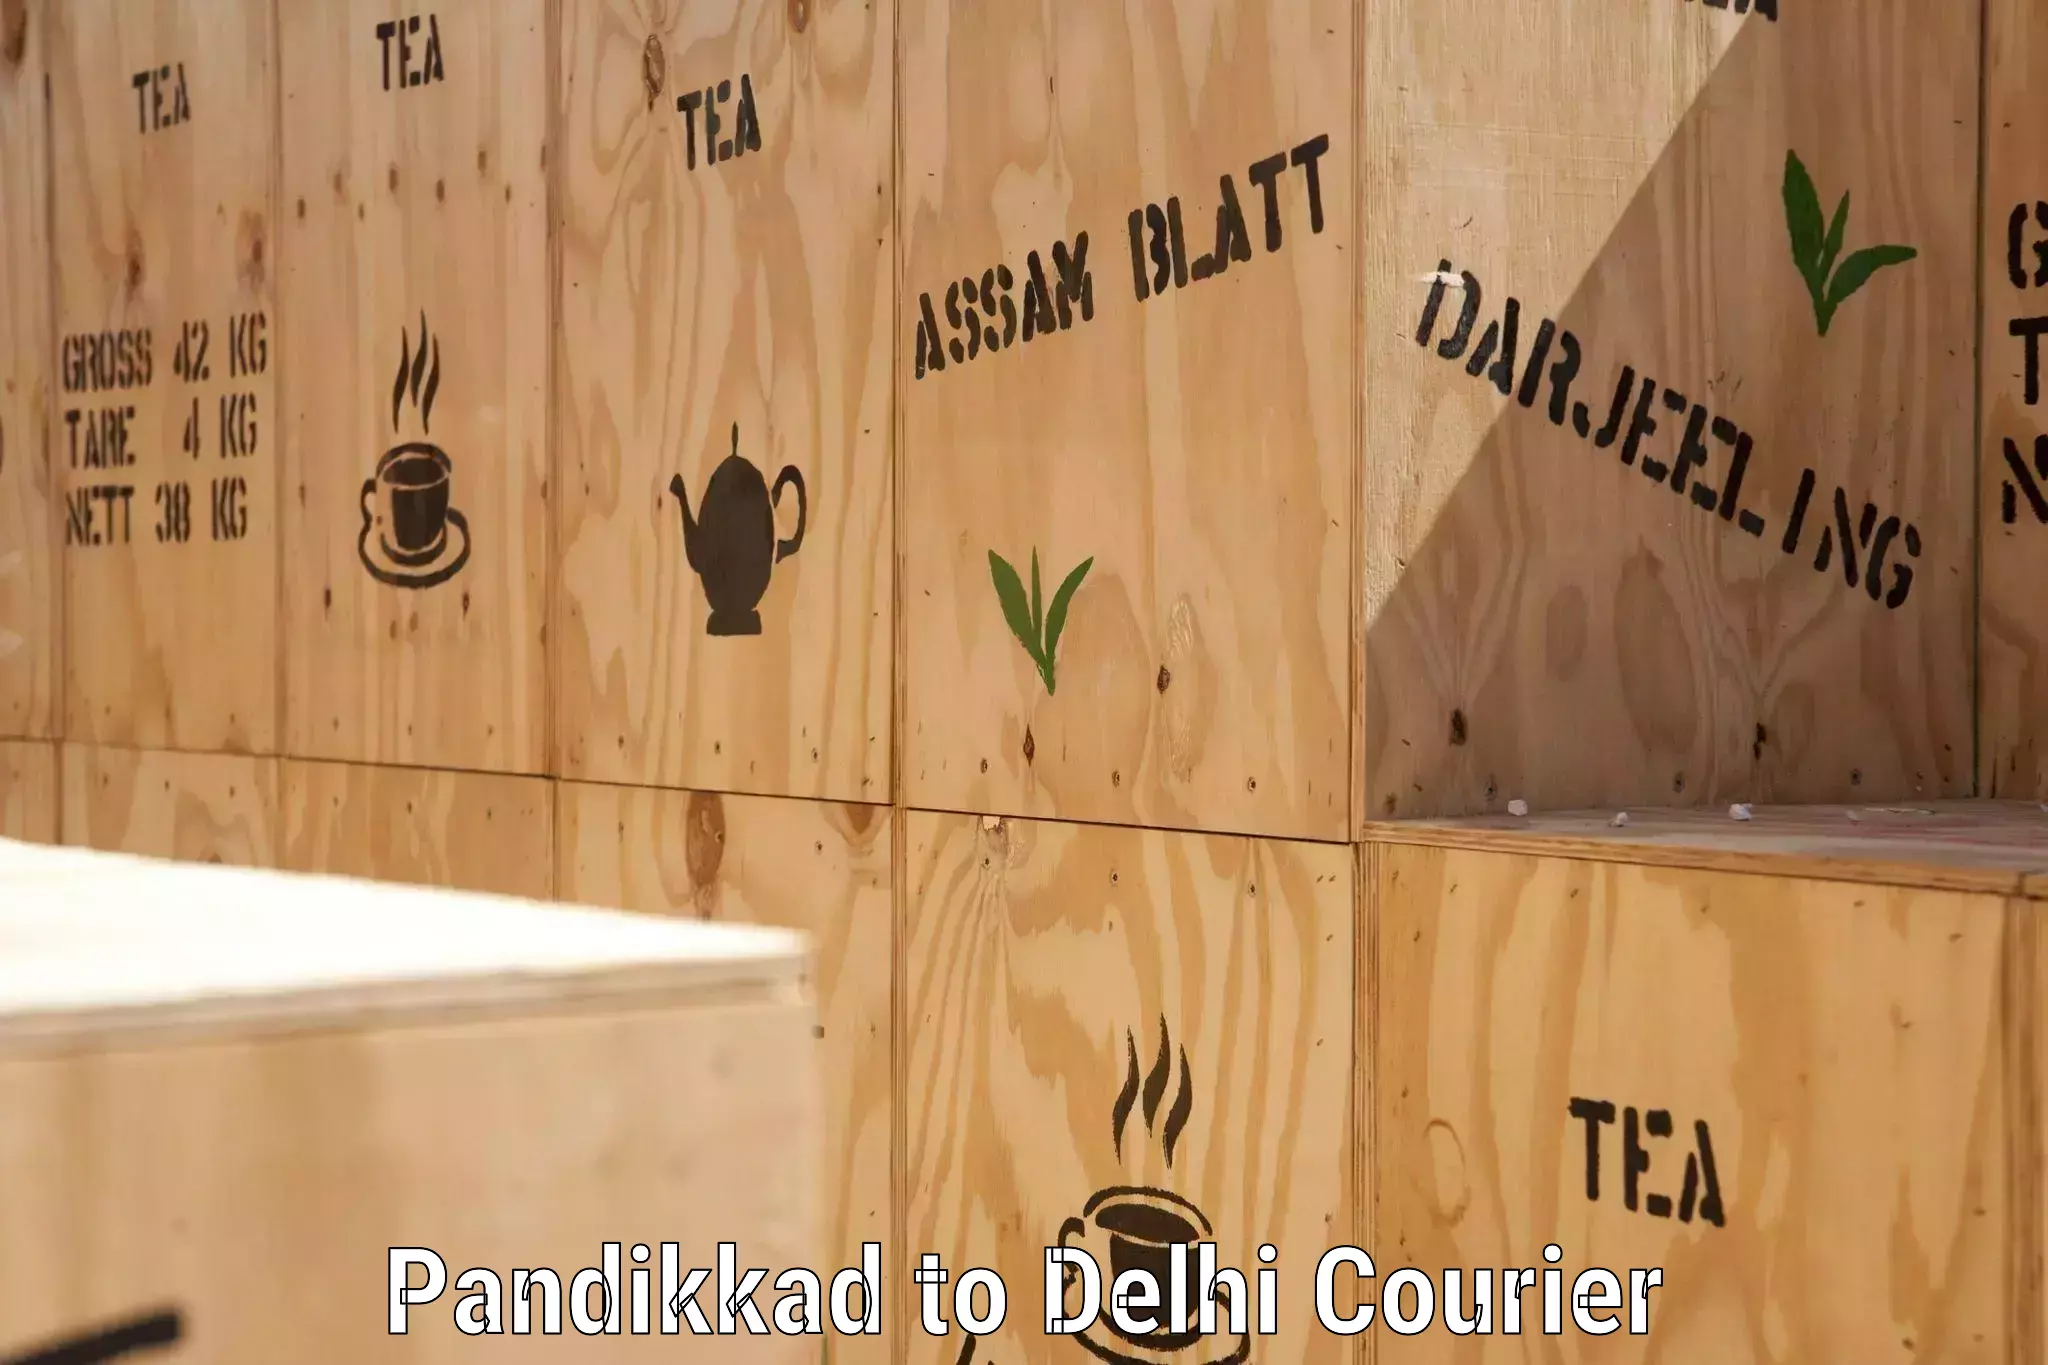 Next-generation courier services Pandikkad to Jawaharlal Nehru University New Delhi